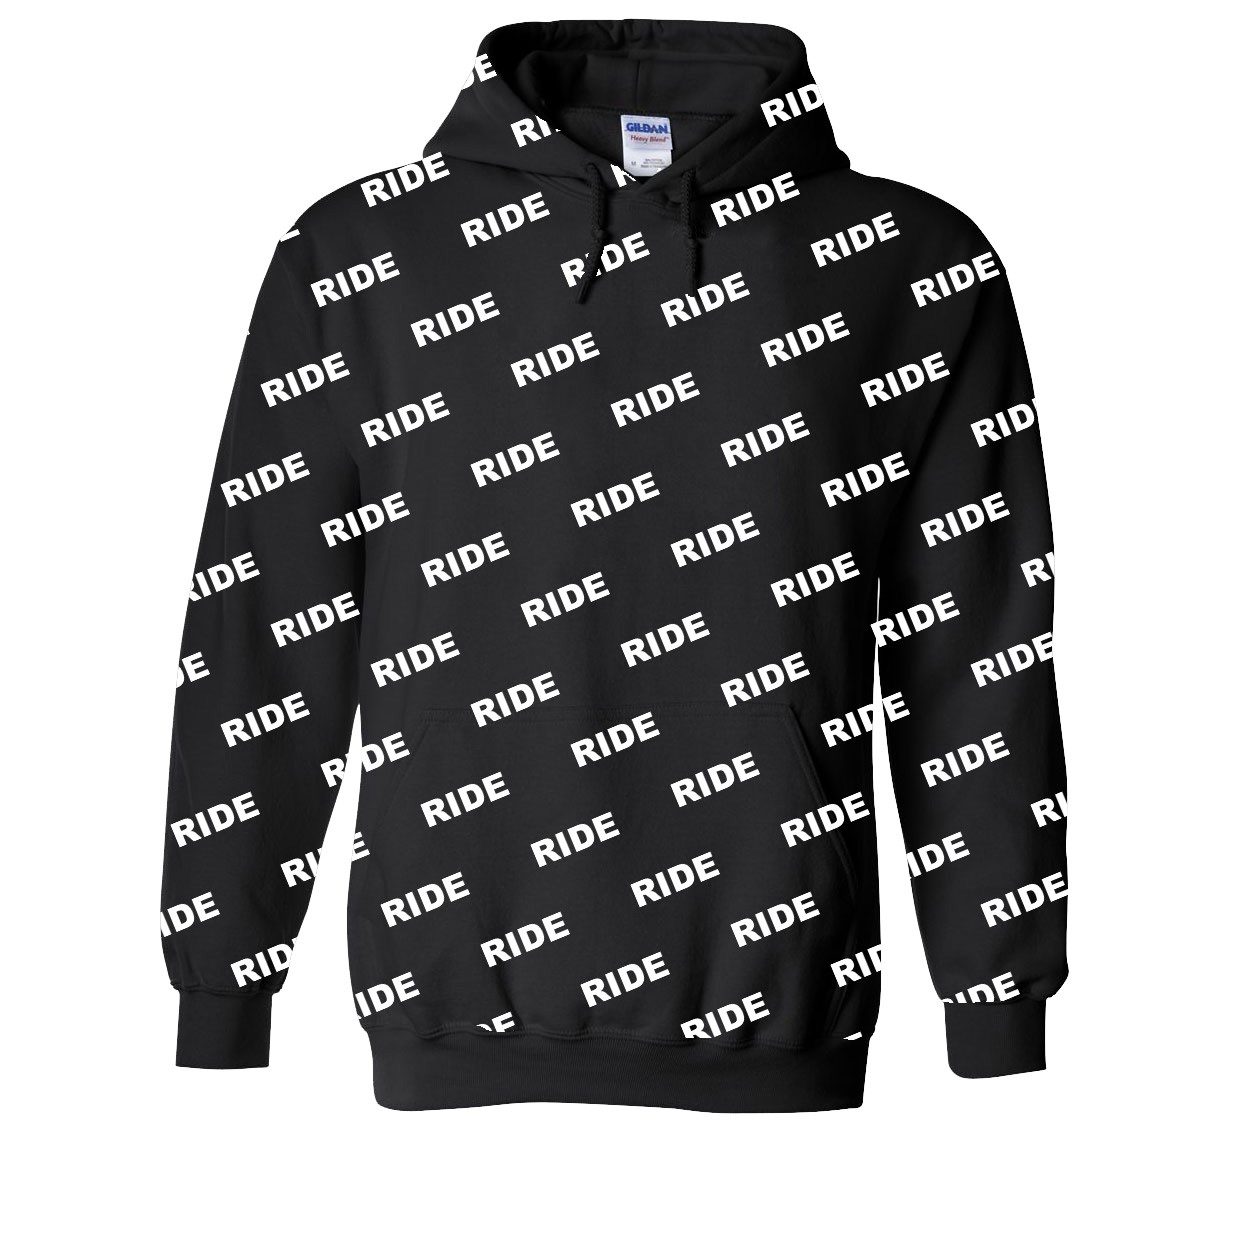 Ride Brand Logo Pro Patterned Sublimated Hooded Sweatshirt Black (White Logo)